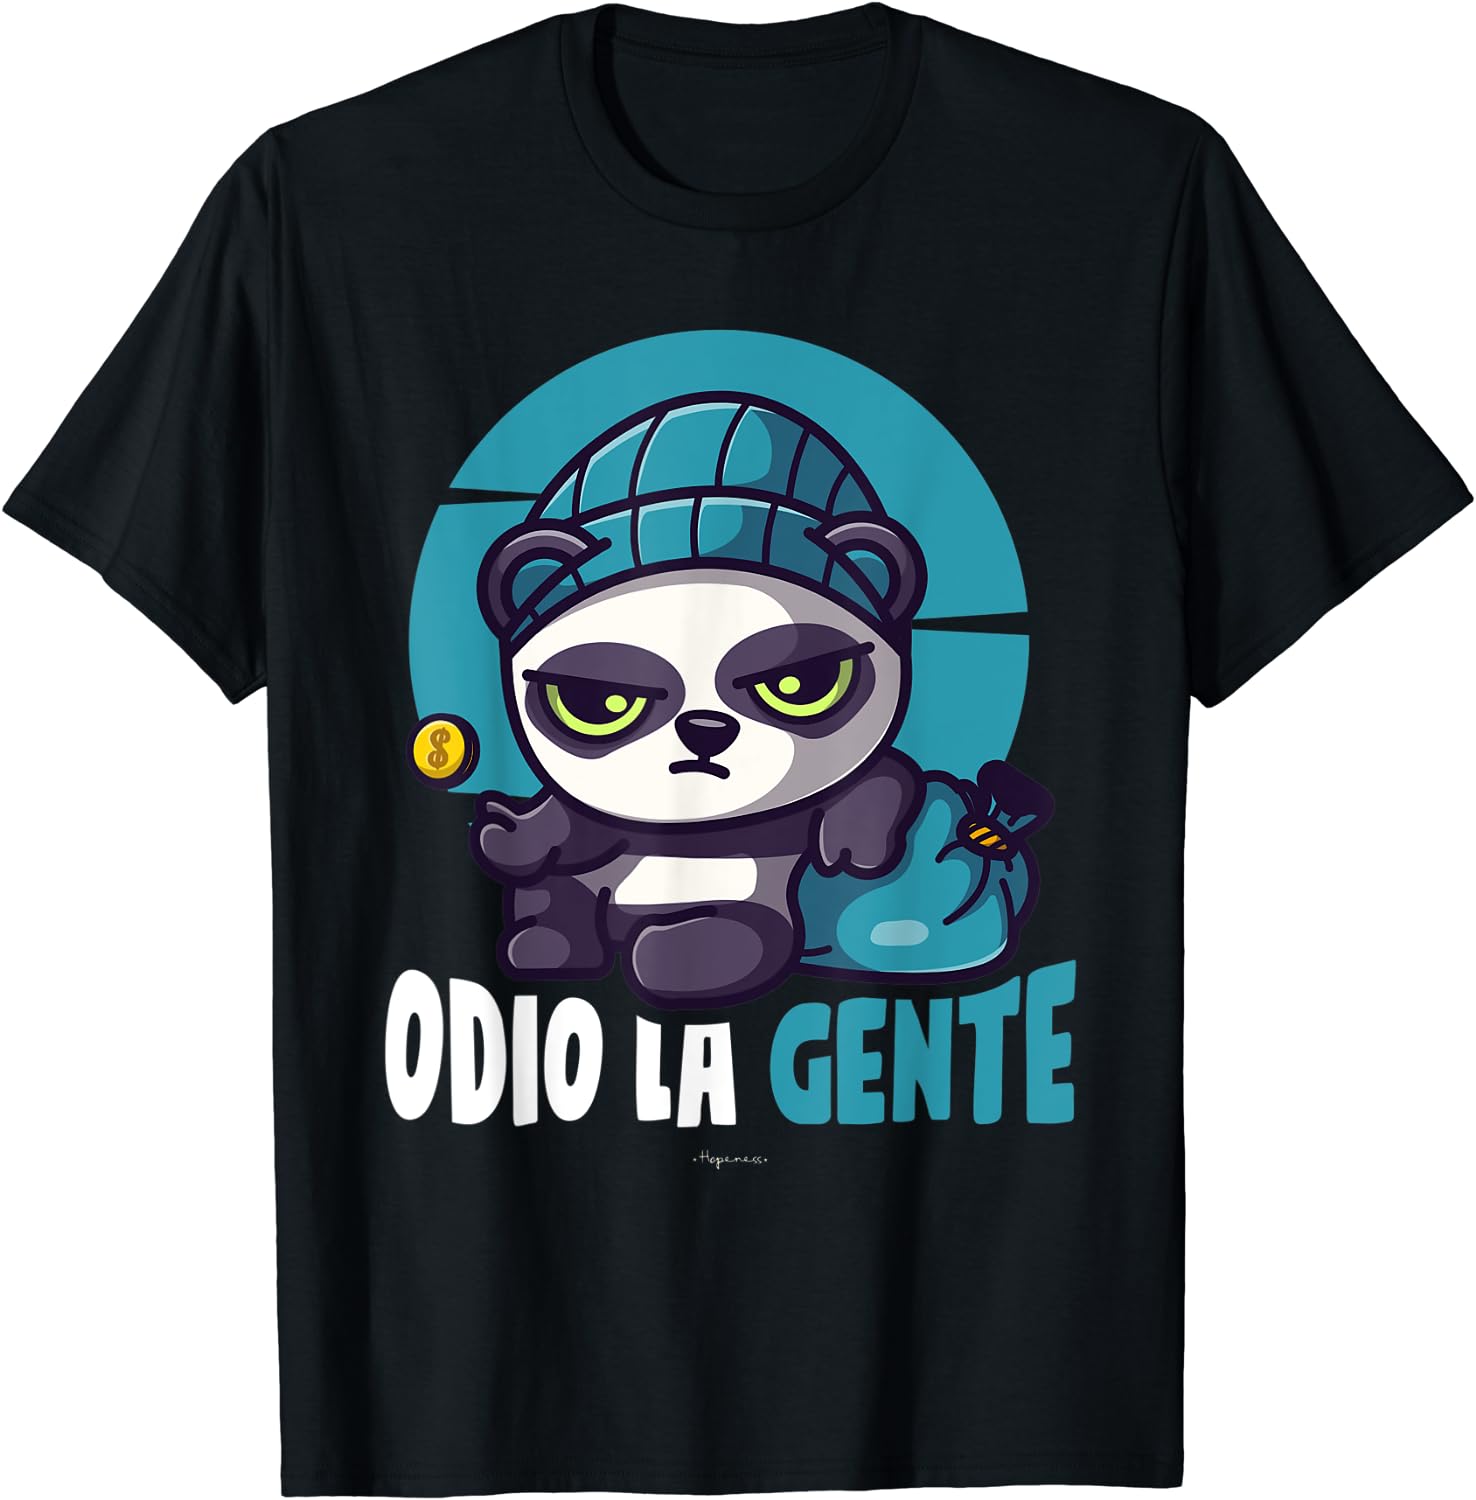 Discover Maglietta T-Shirt Odio Per Uomo Donna Bambini - Panda Spiritoso Detto Odio La Gente